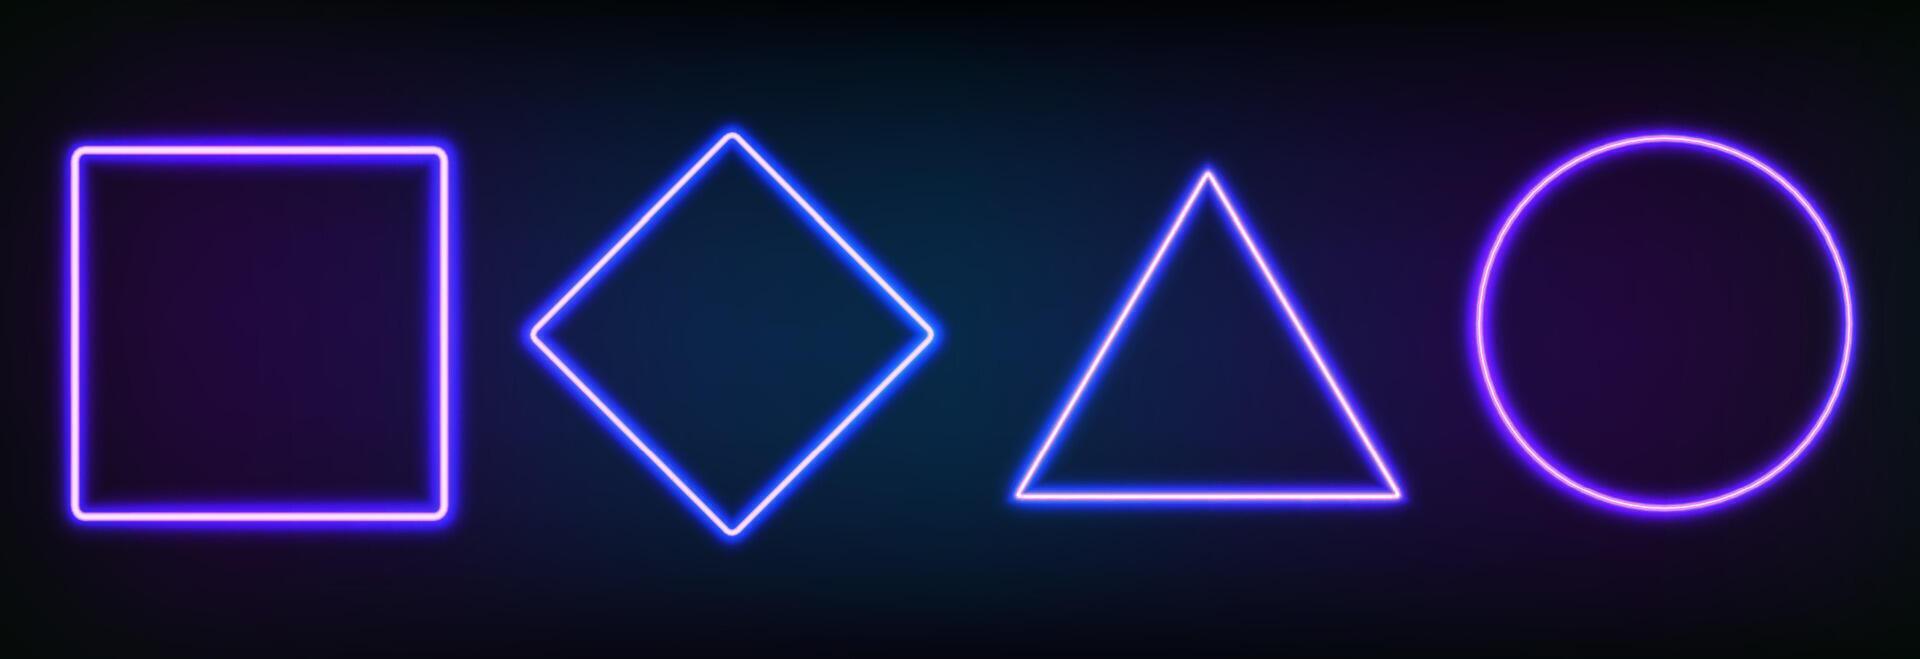 realistisch einstellen von Neon- Frames anders geometrisch Formen mit LED Hintergrundbeleuchtung .glühend fluoreszierend Rand isoliert auf dunkel Hintergrund. hell beleuchtet gestalten von Rechteck, Quadrat, Kreis und Rhombus vektor